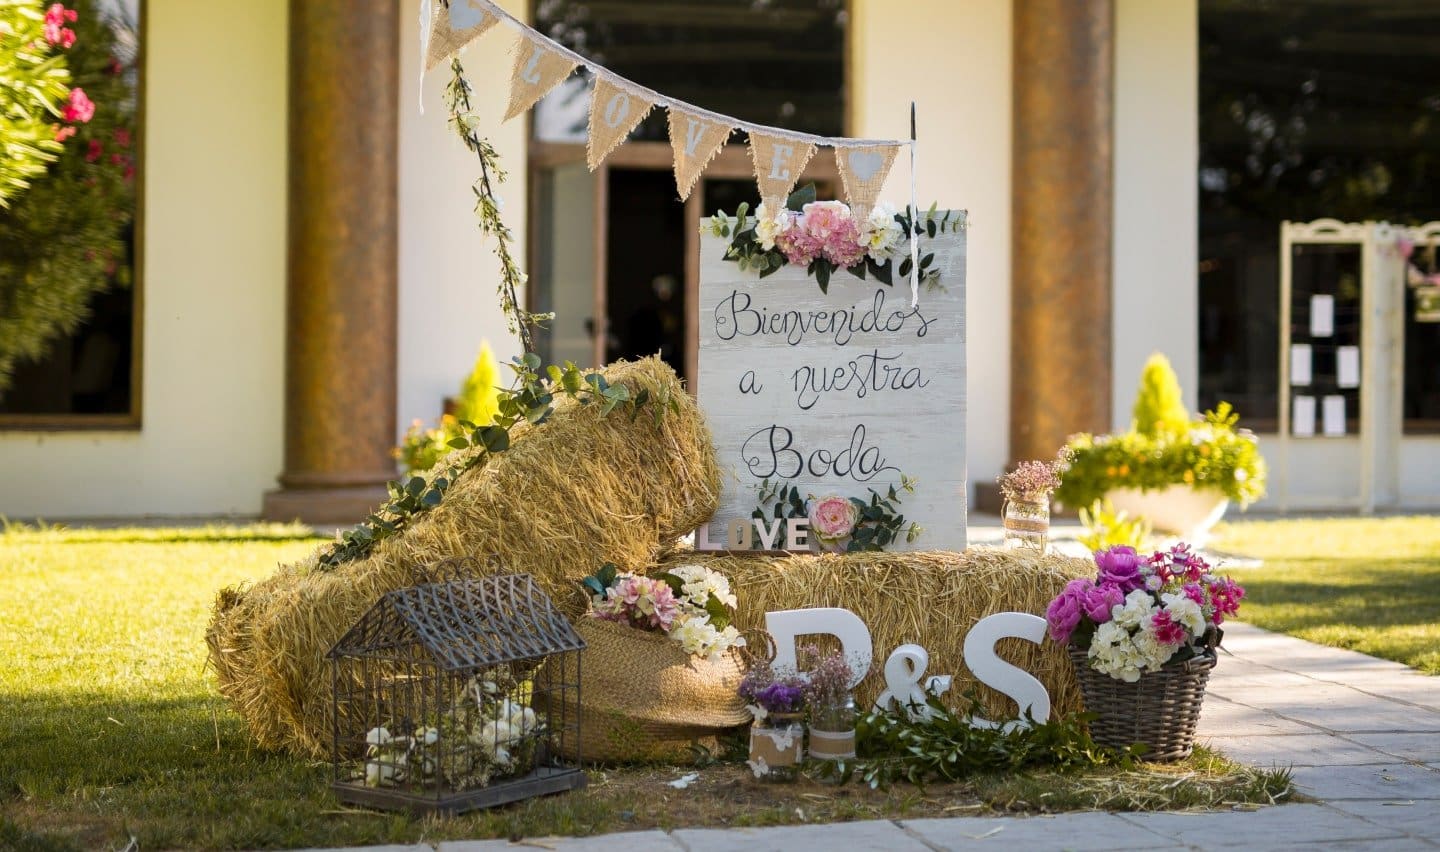 Entrada decorada con dos pacas de paja, unas iniciales P y S, flores, y un cartel en el que se puede leer "Bienvenidos a vuestra boda"